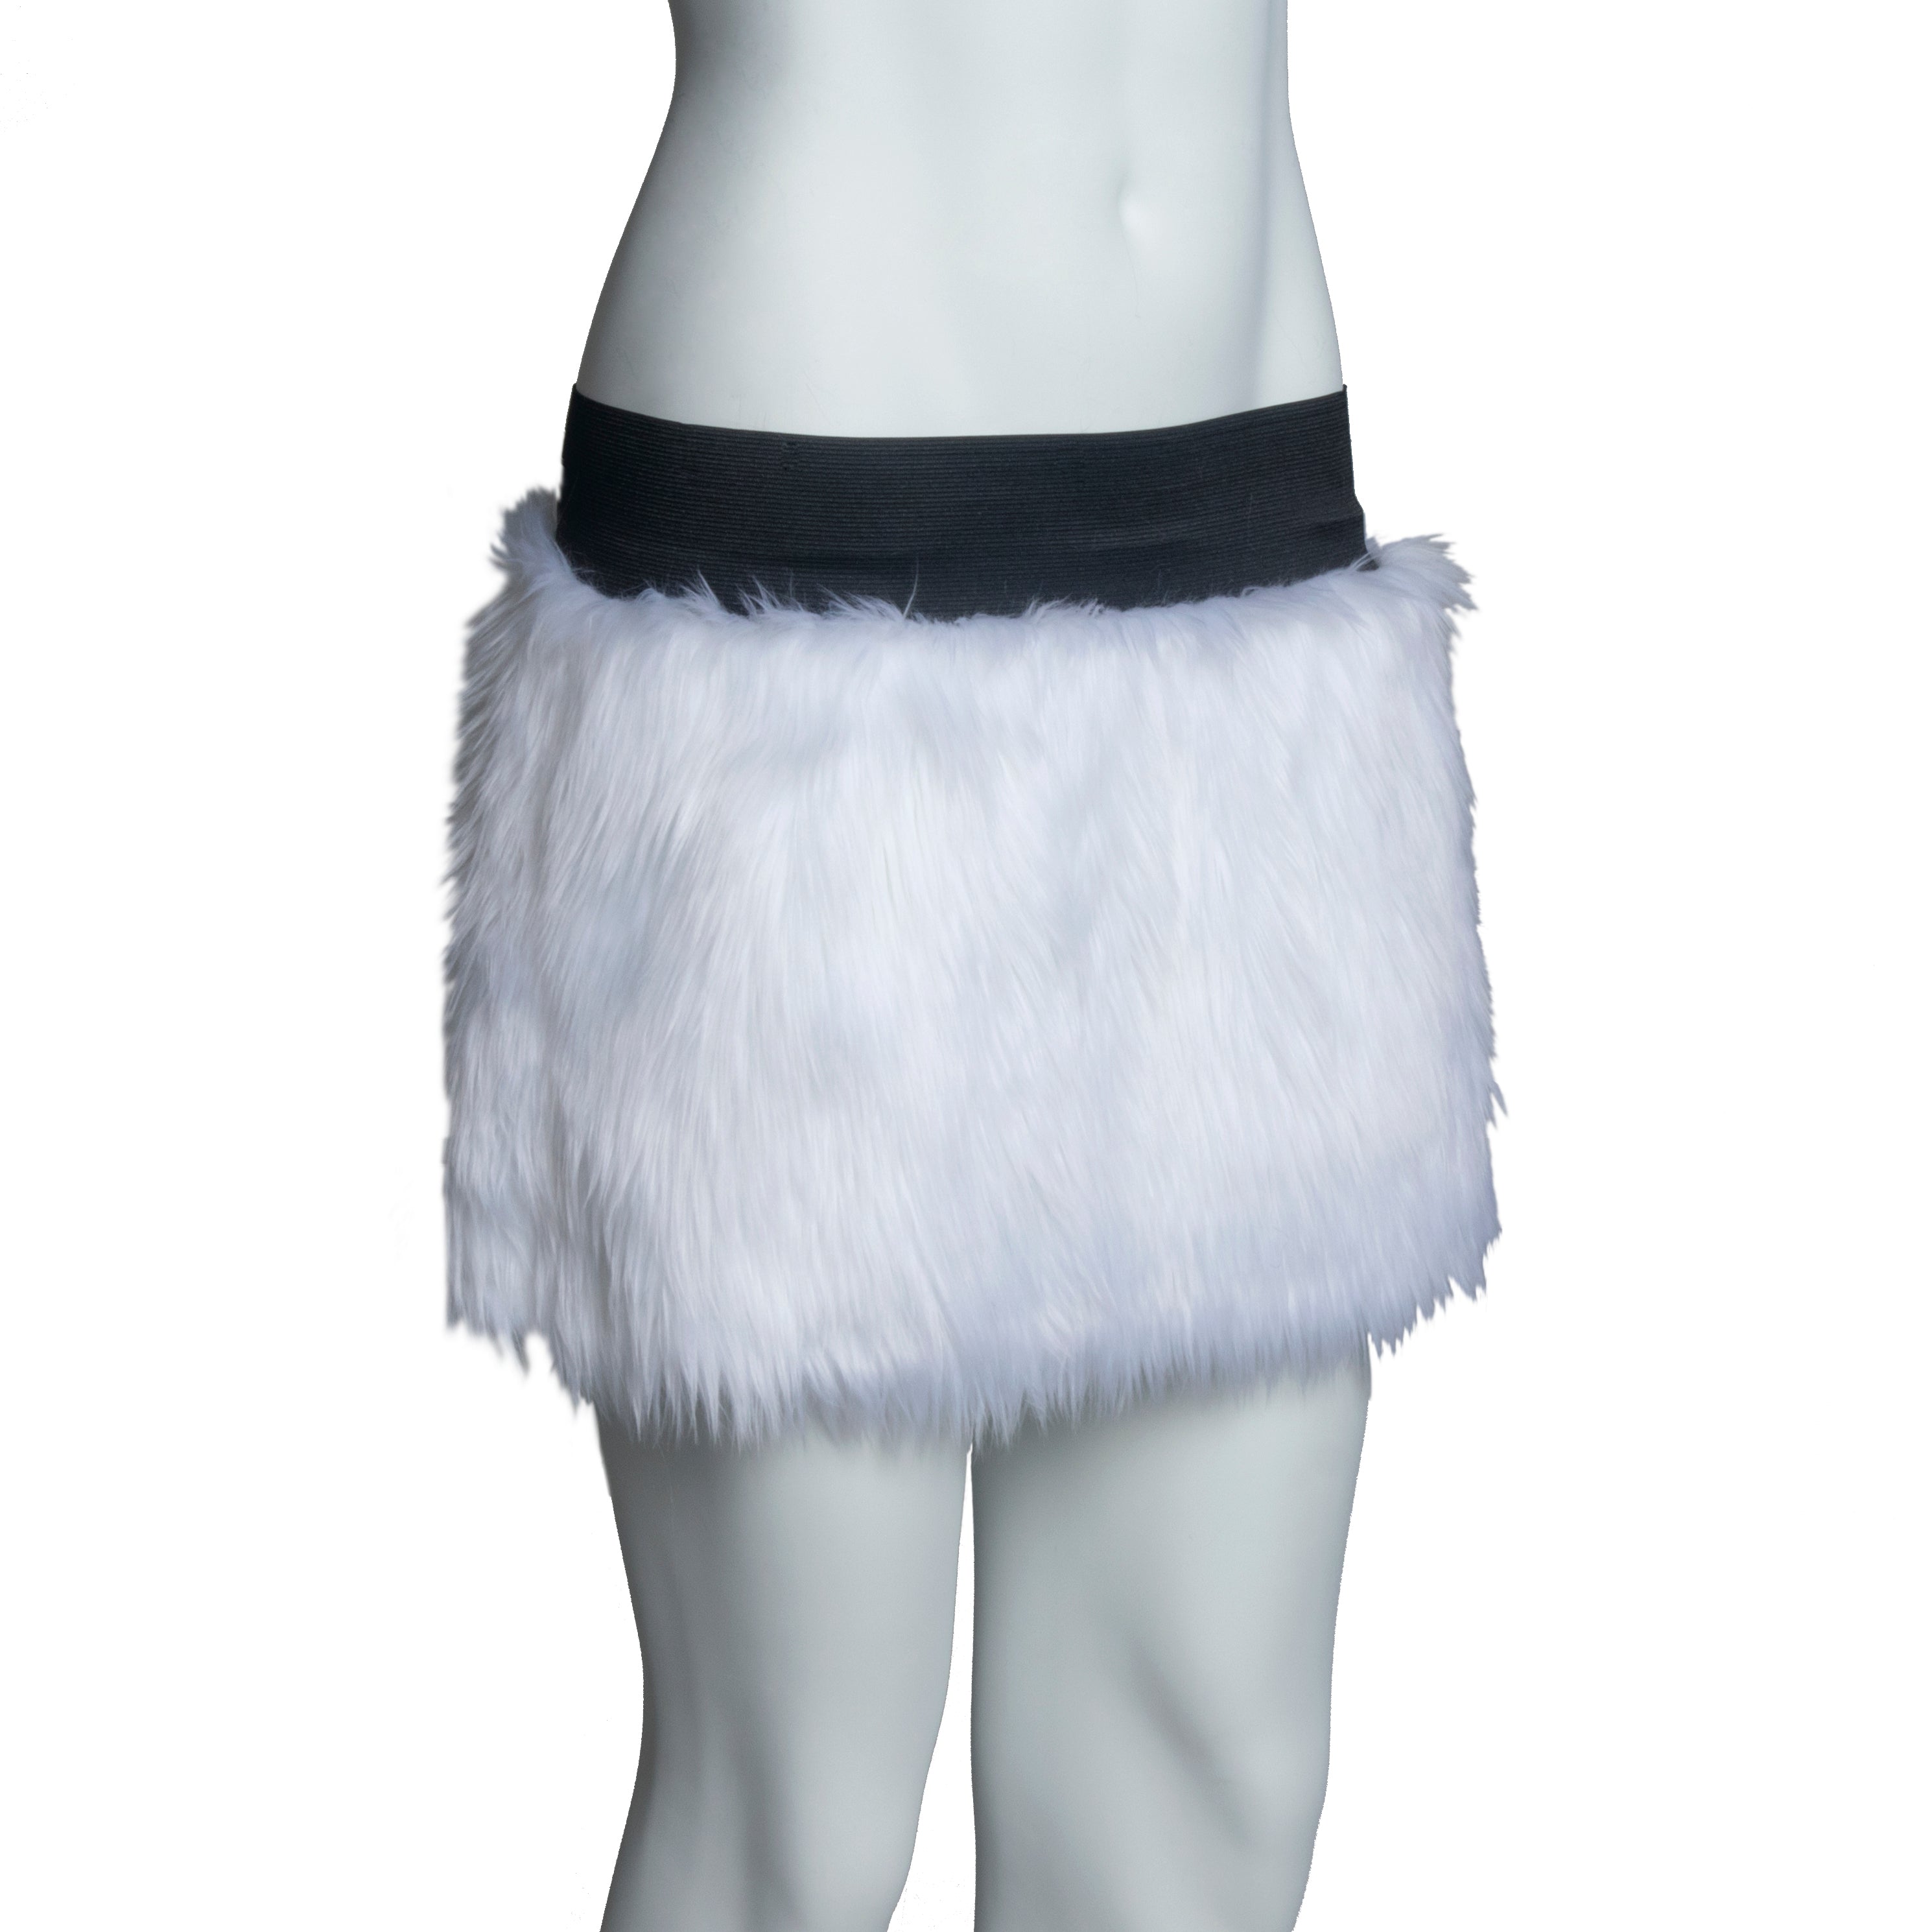 Monster Full Fur Skirt - Pawstar Pawstar Skirt clothing, cosplay, costume, furry, ship-15, ship-30day, skirt